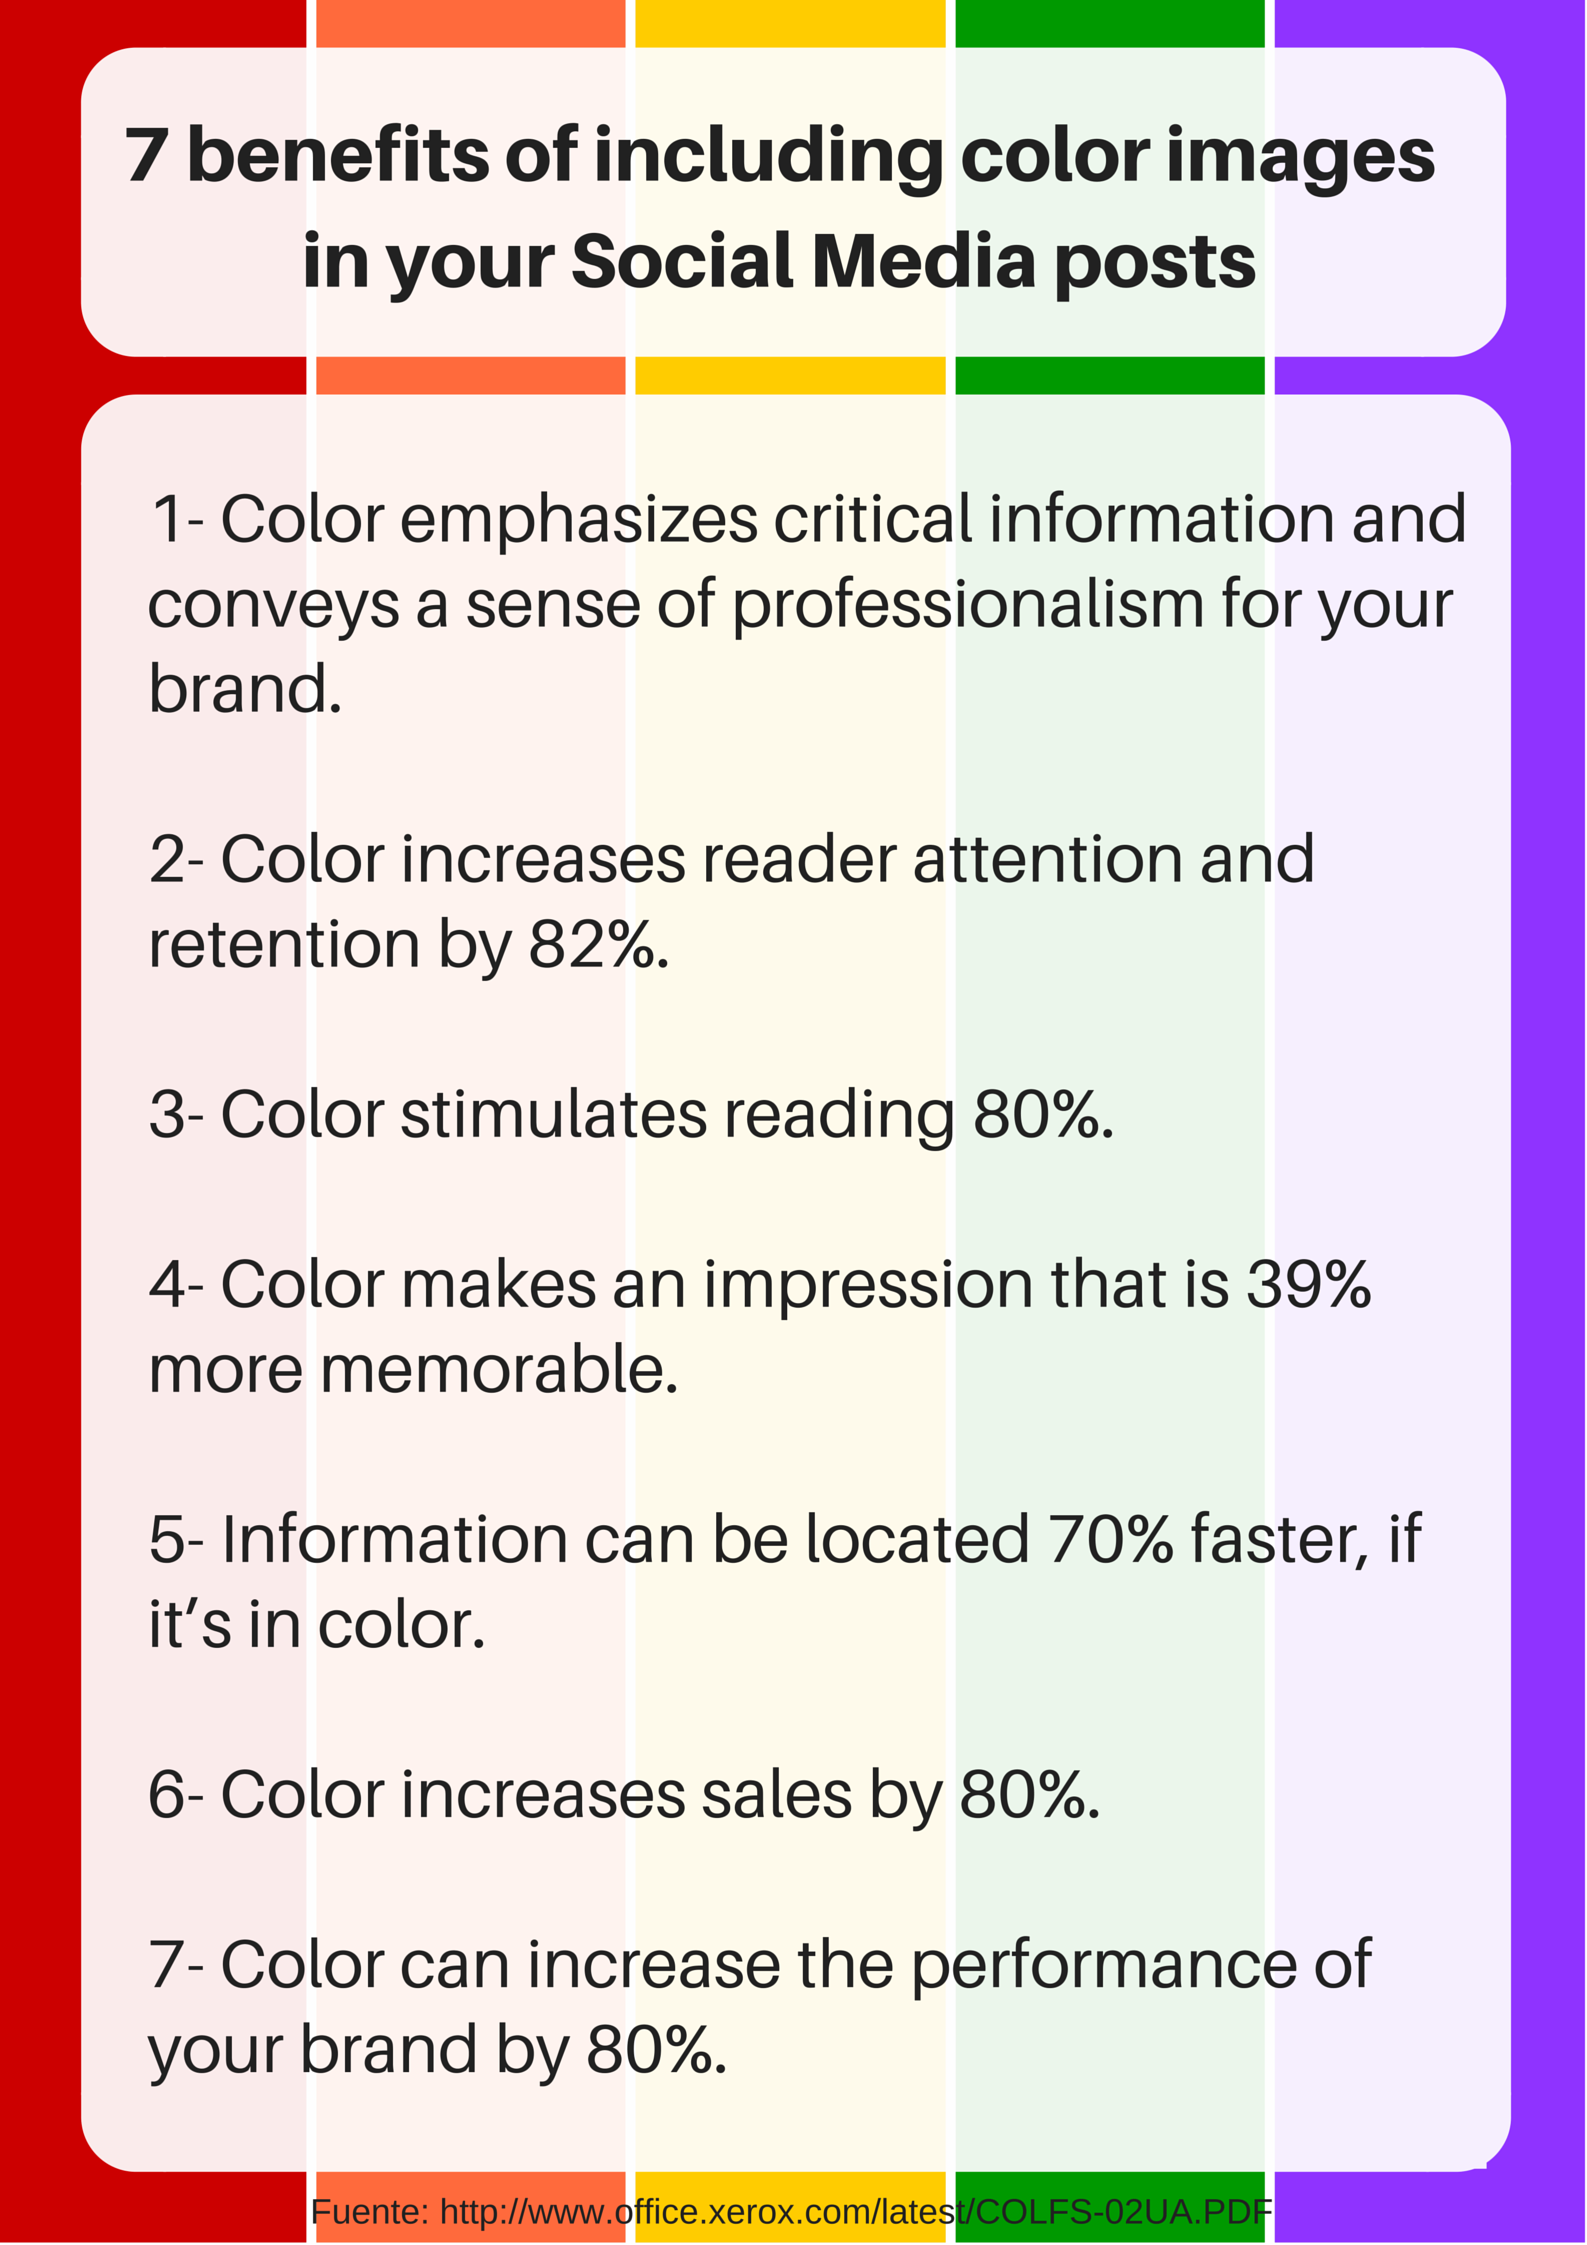 7 Beneficios de Incluir Imágenes a Color en tus Publicaciones para Redes Sociales